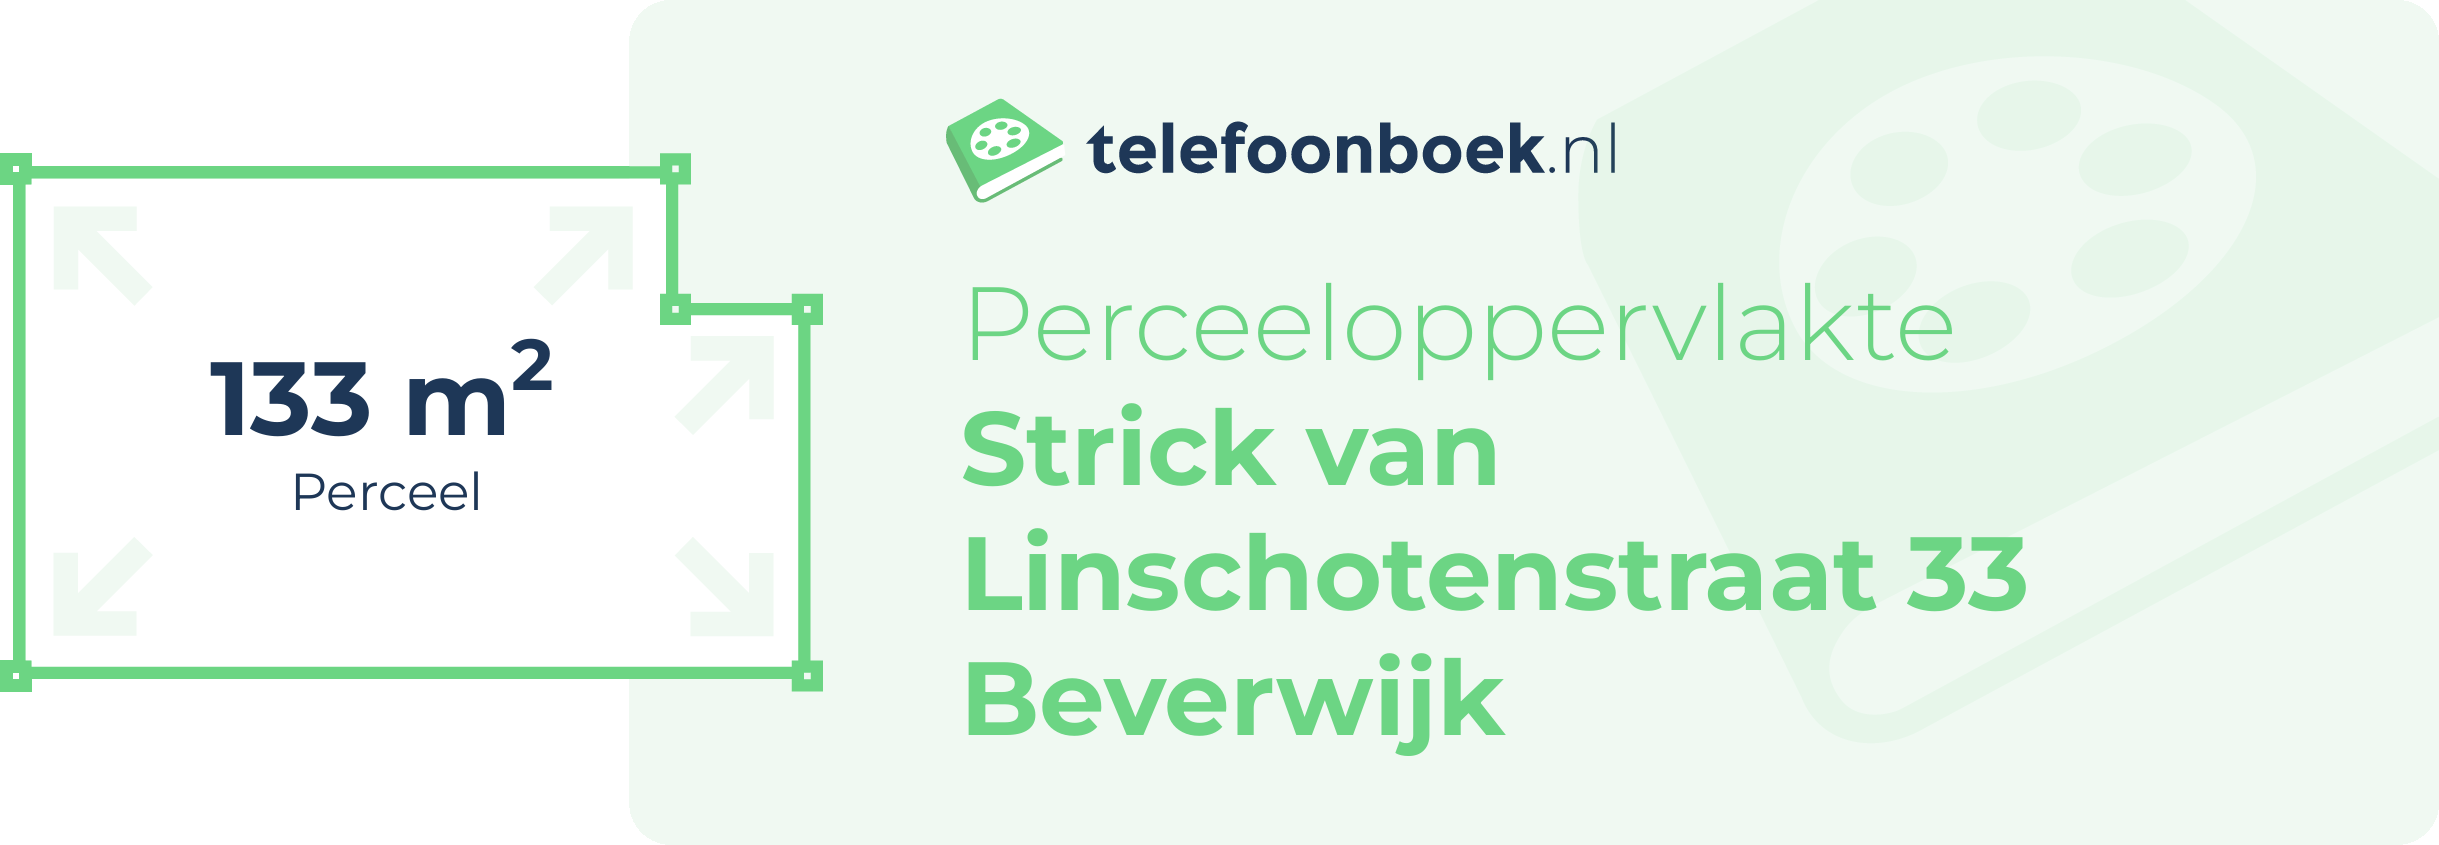 Perceeloppervlakte Strick Van Linschotenstraat 33 Beverwijk